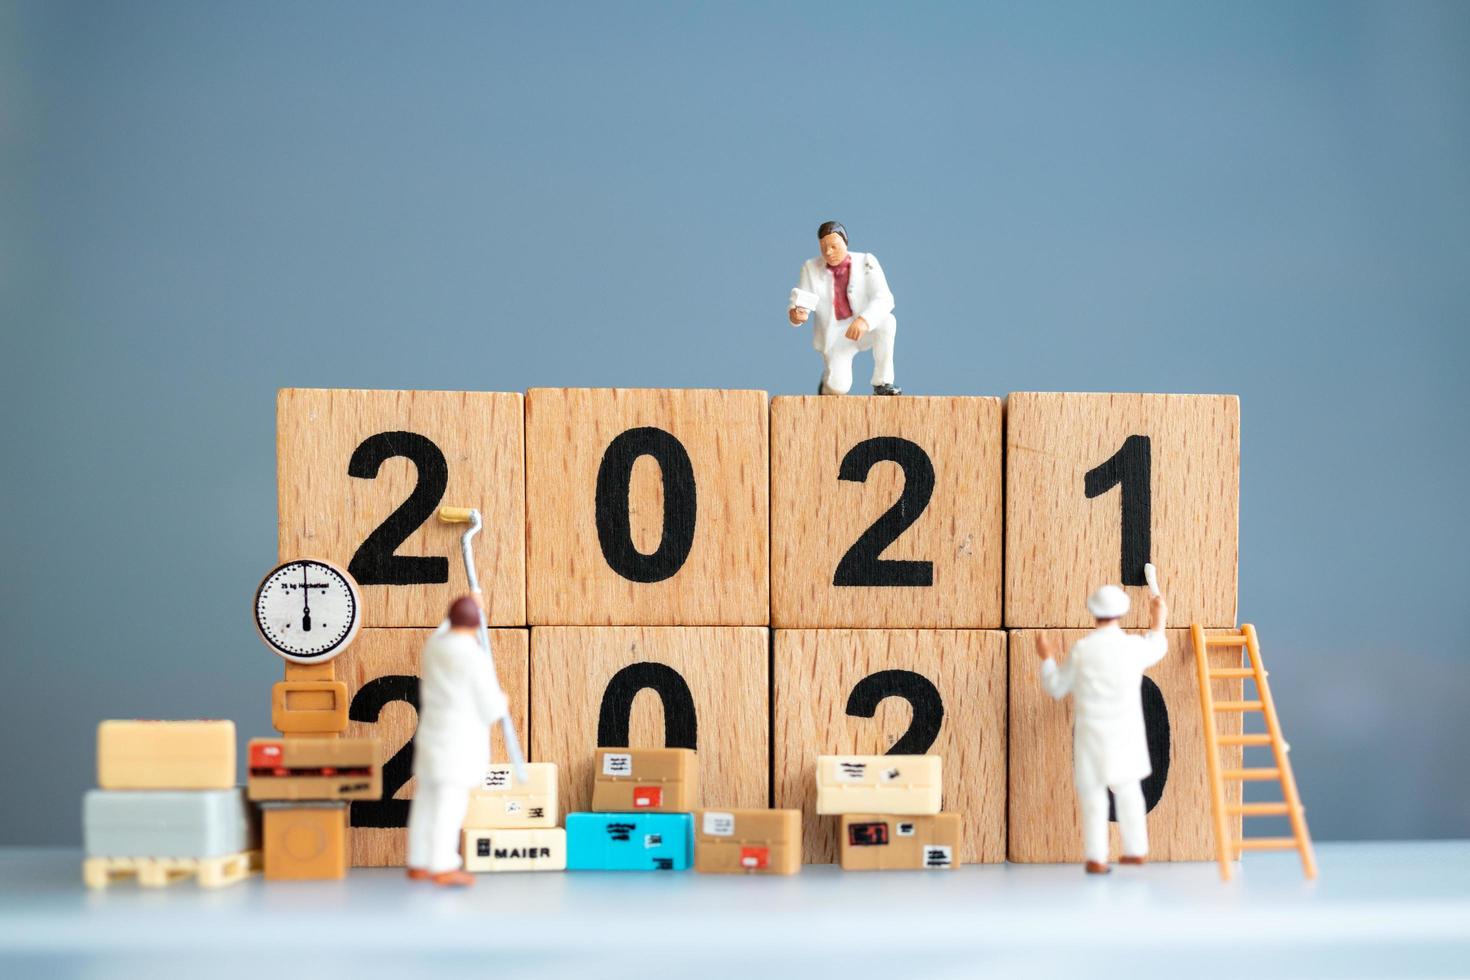 trabalhadores em miniatura pintando 2021 e removendo números de 2020, conceito de feliz ano novo foto